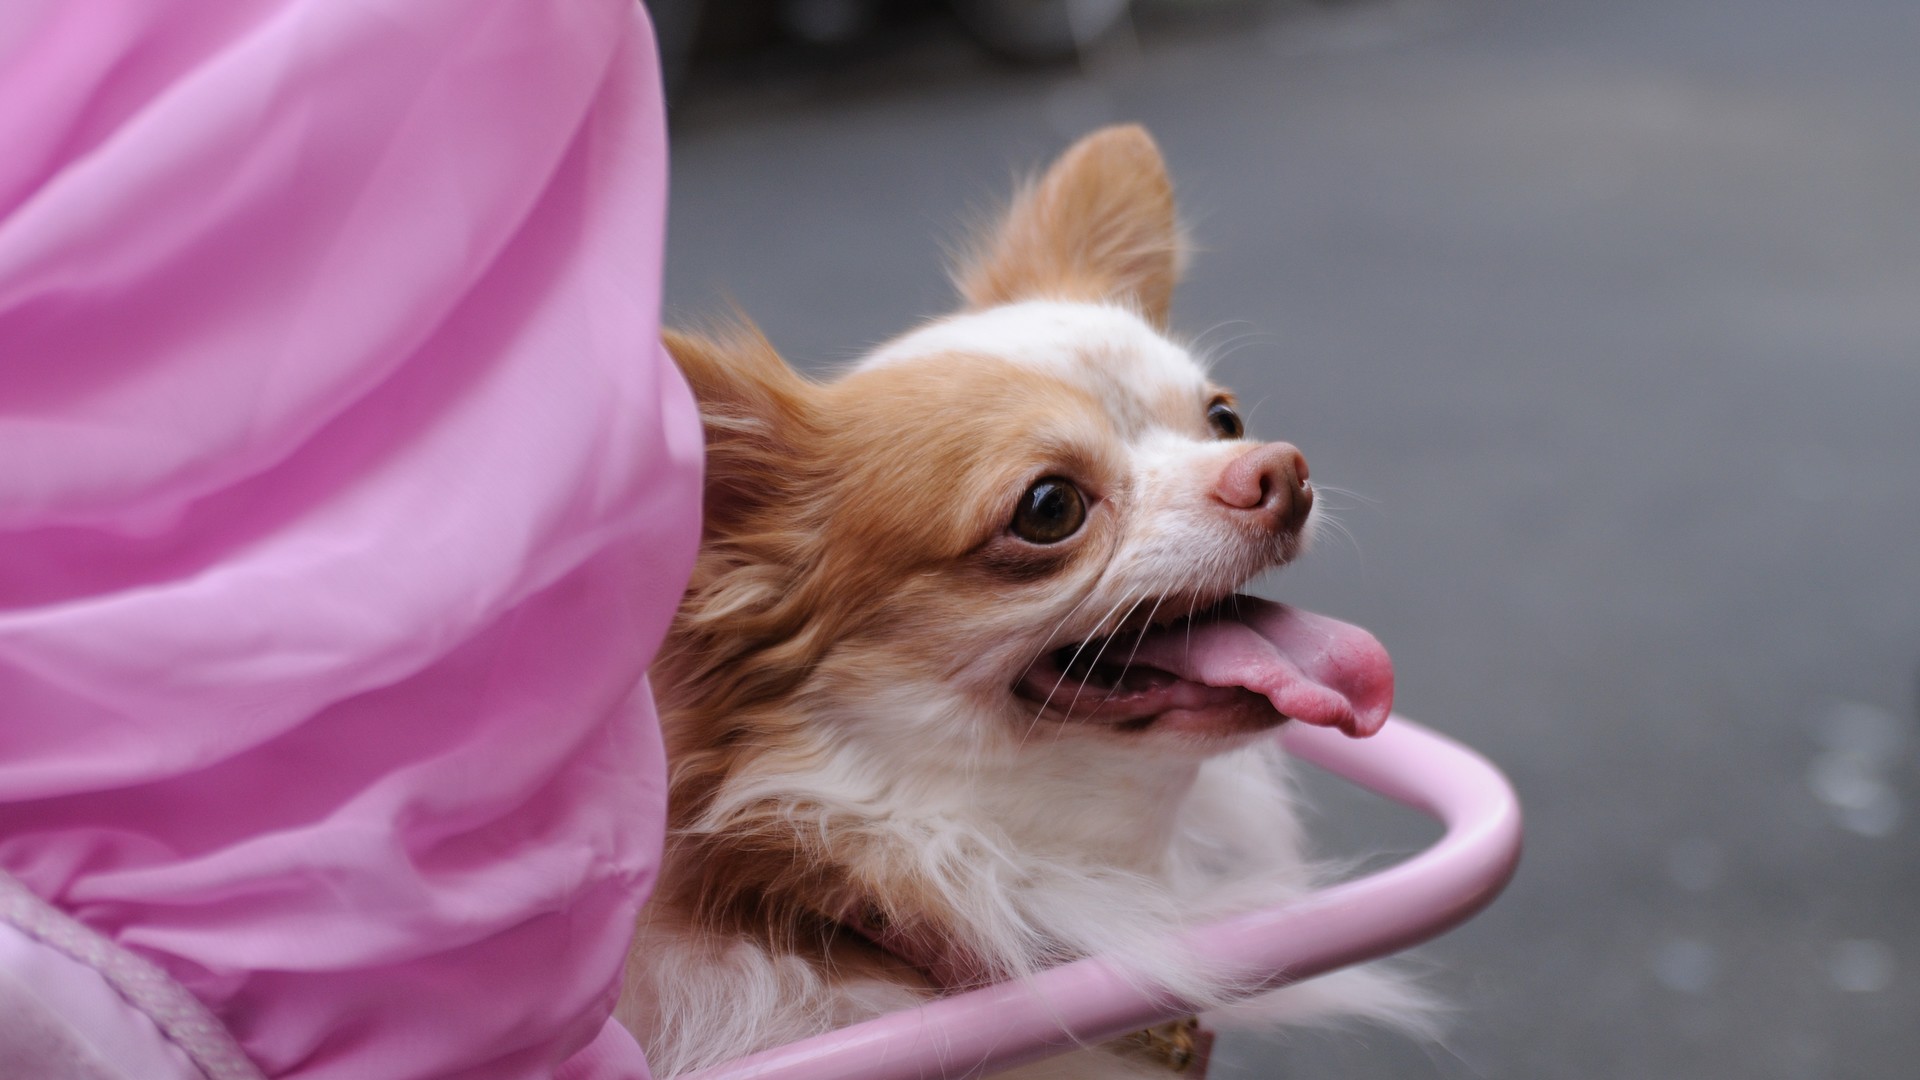 Un chien de la race chihuahua se laisse promener dans une poussette (photo Flickr Ajari CC BY 2.0)